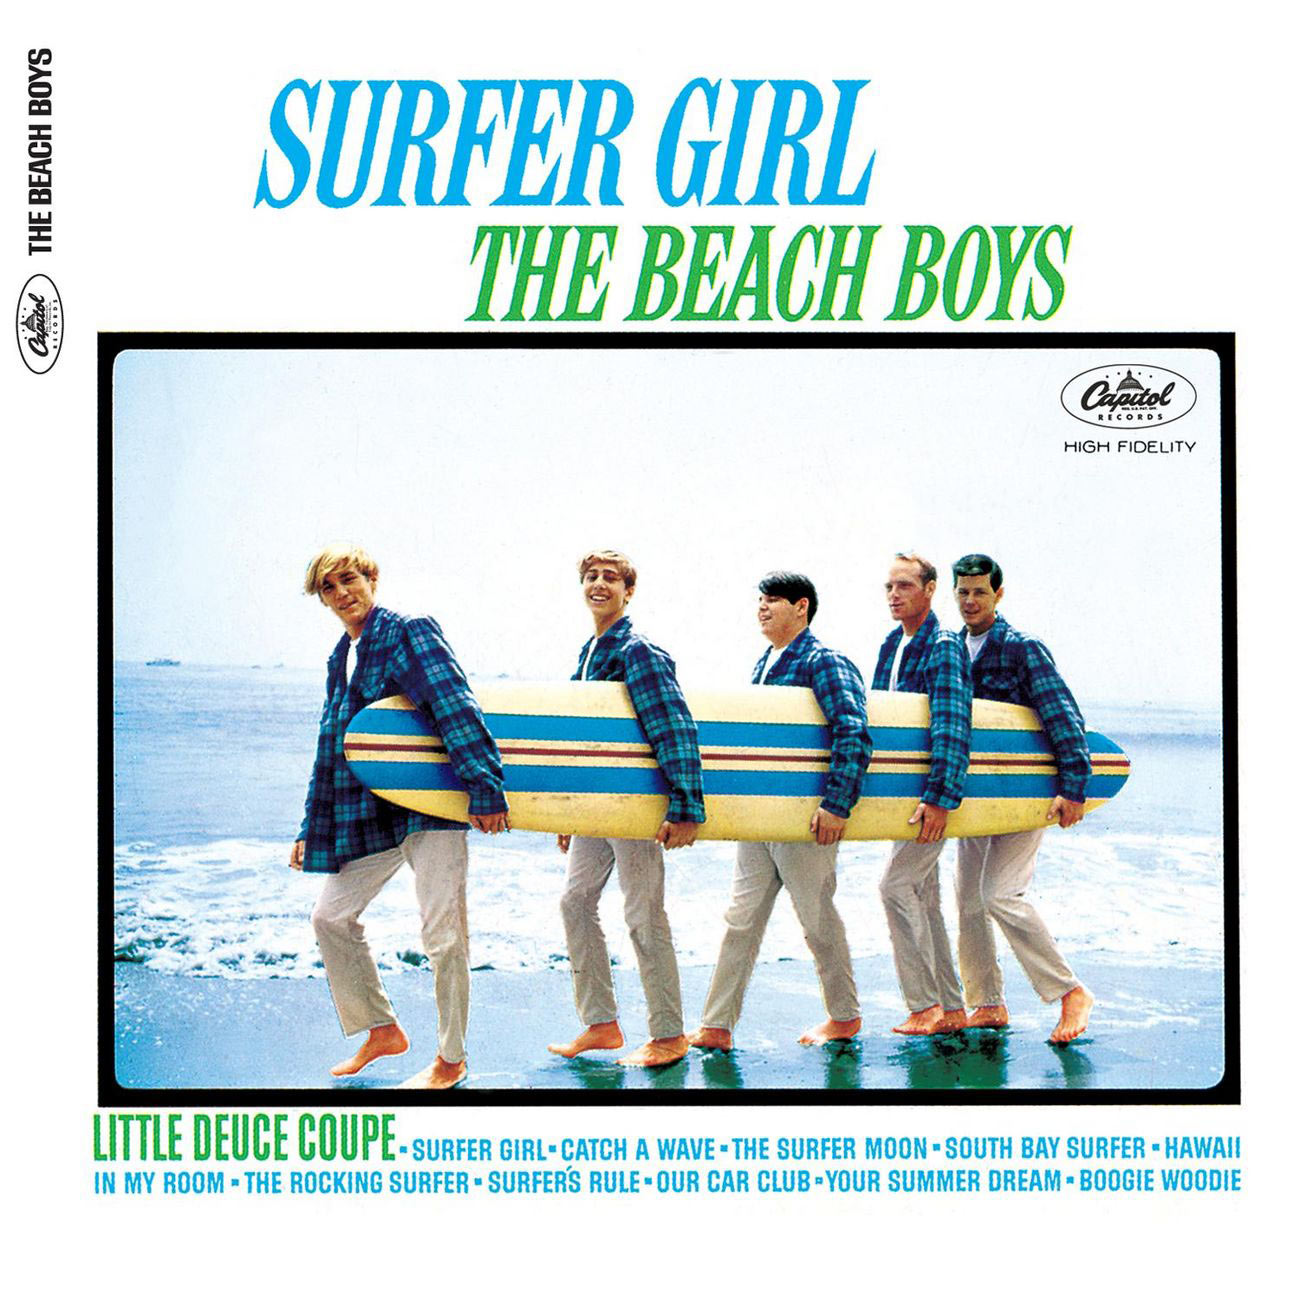 The Beach Boys – Surfer Girl (Mono ＆ Stereo)【44.1kHz／16bit】意大利区-OppsUpro音乐帝国